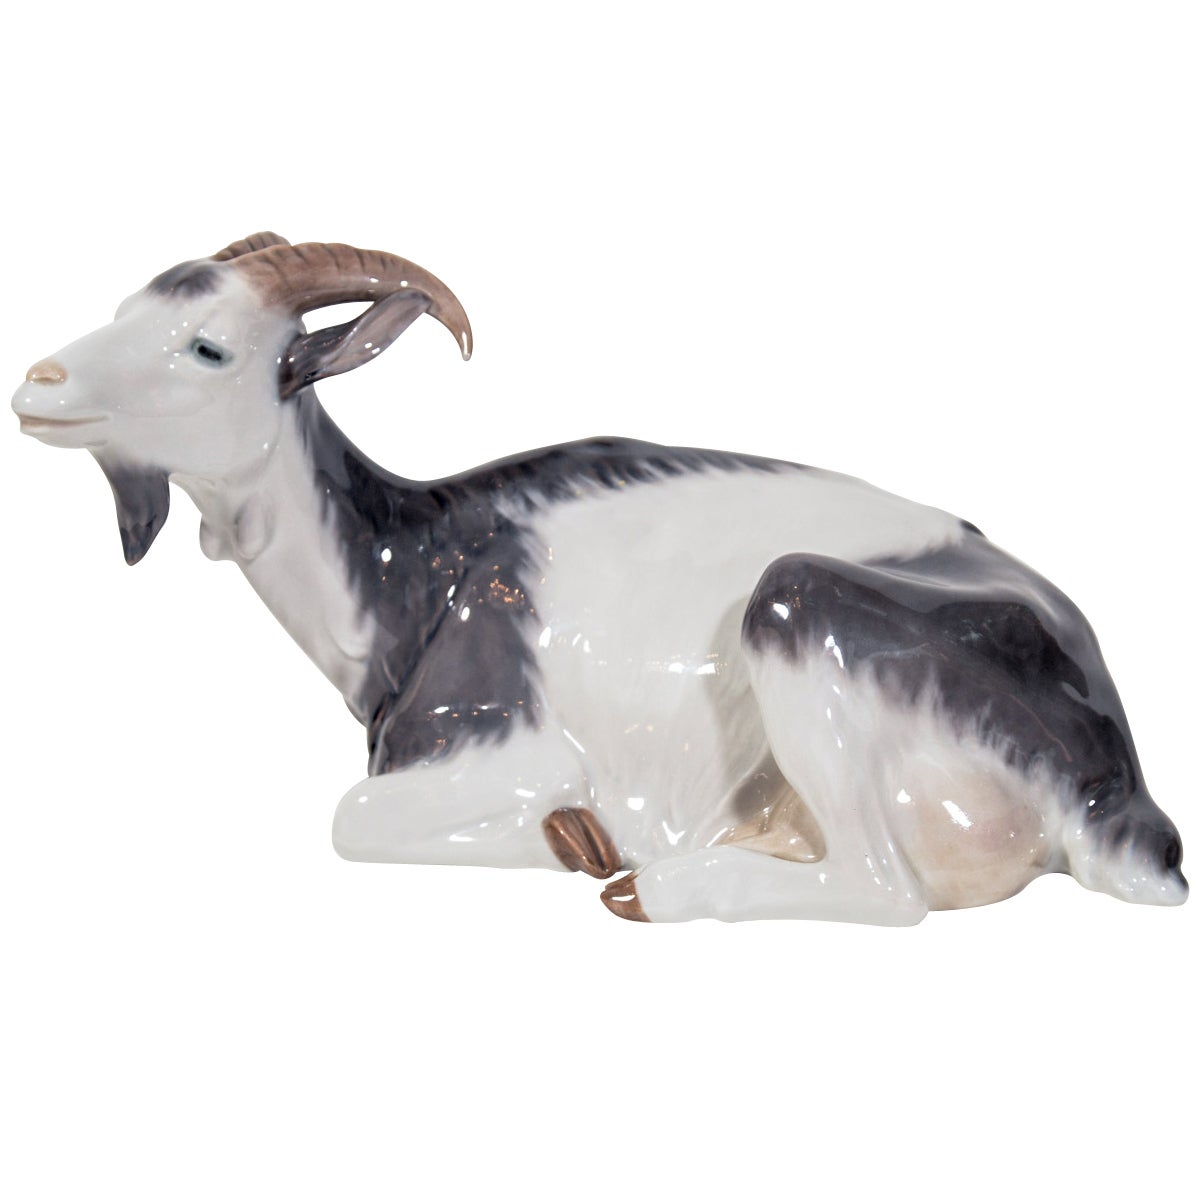 Elegant Porcelain Goat Figurine by C. Thomsen for Royal Copenhagen